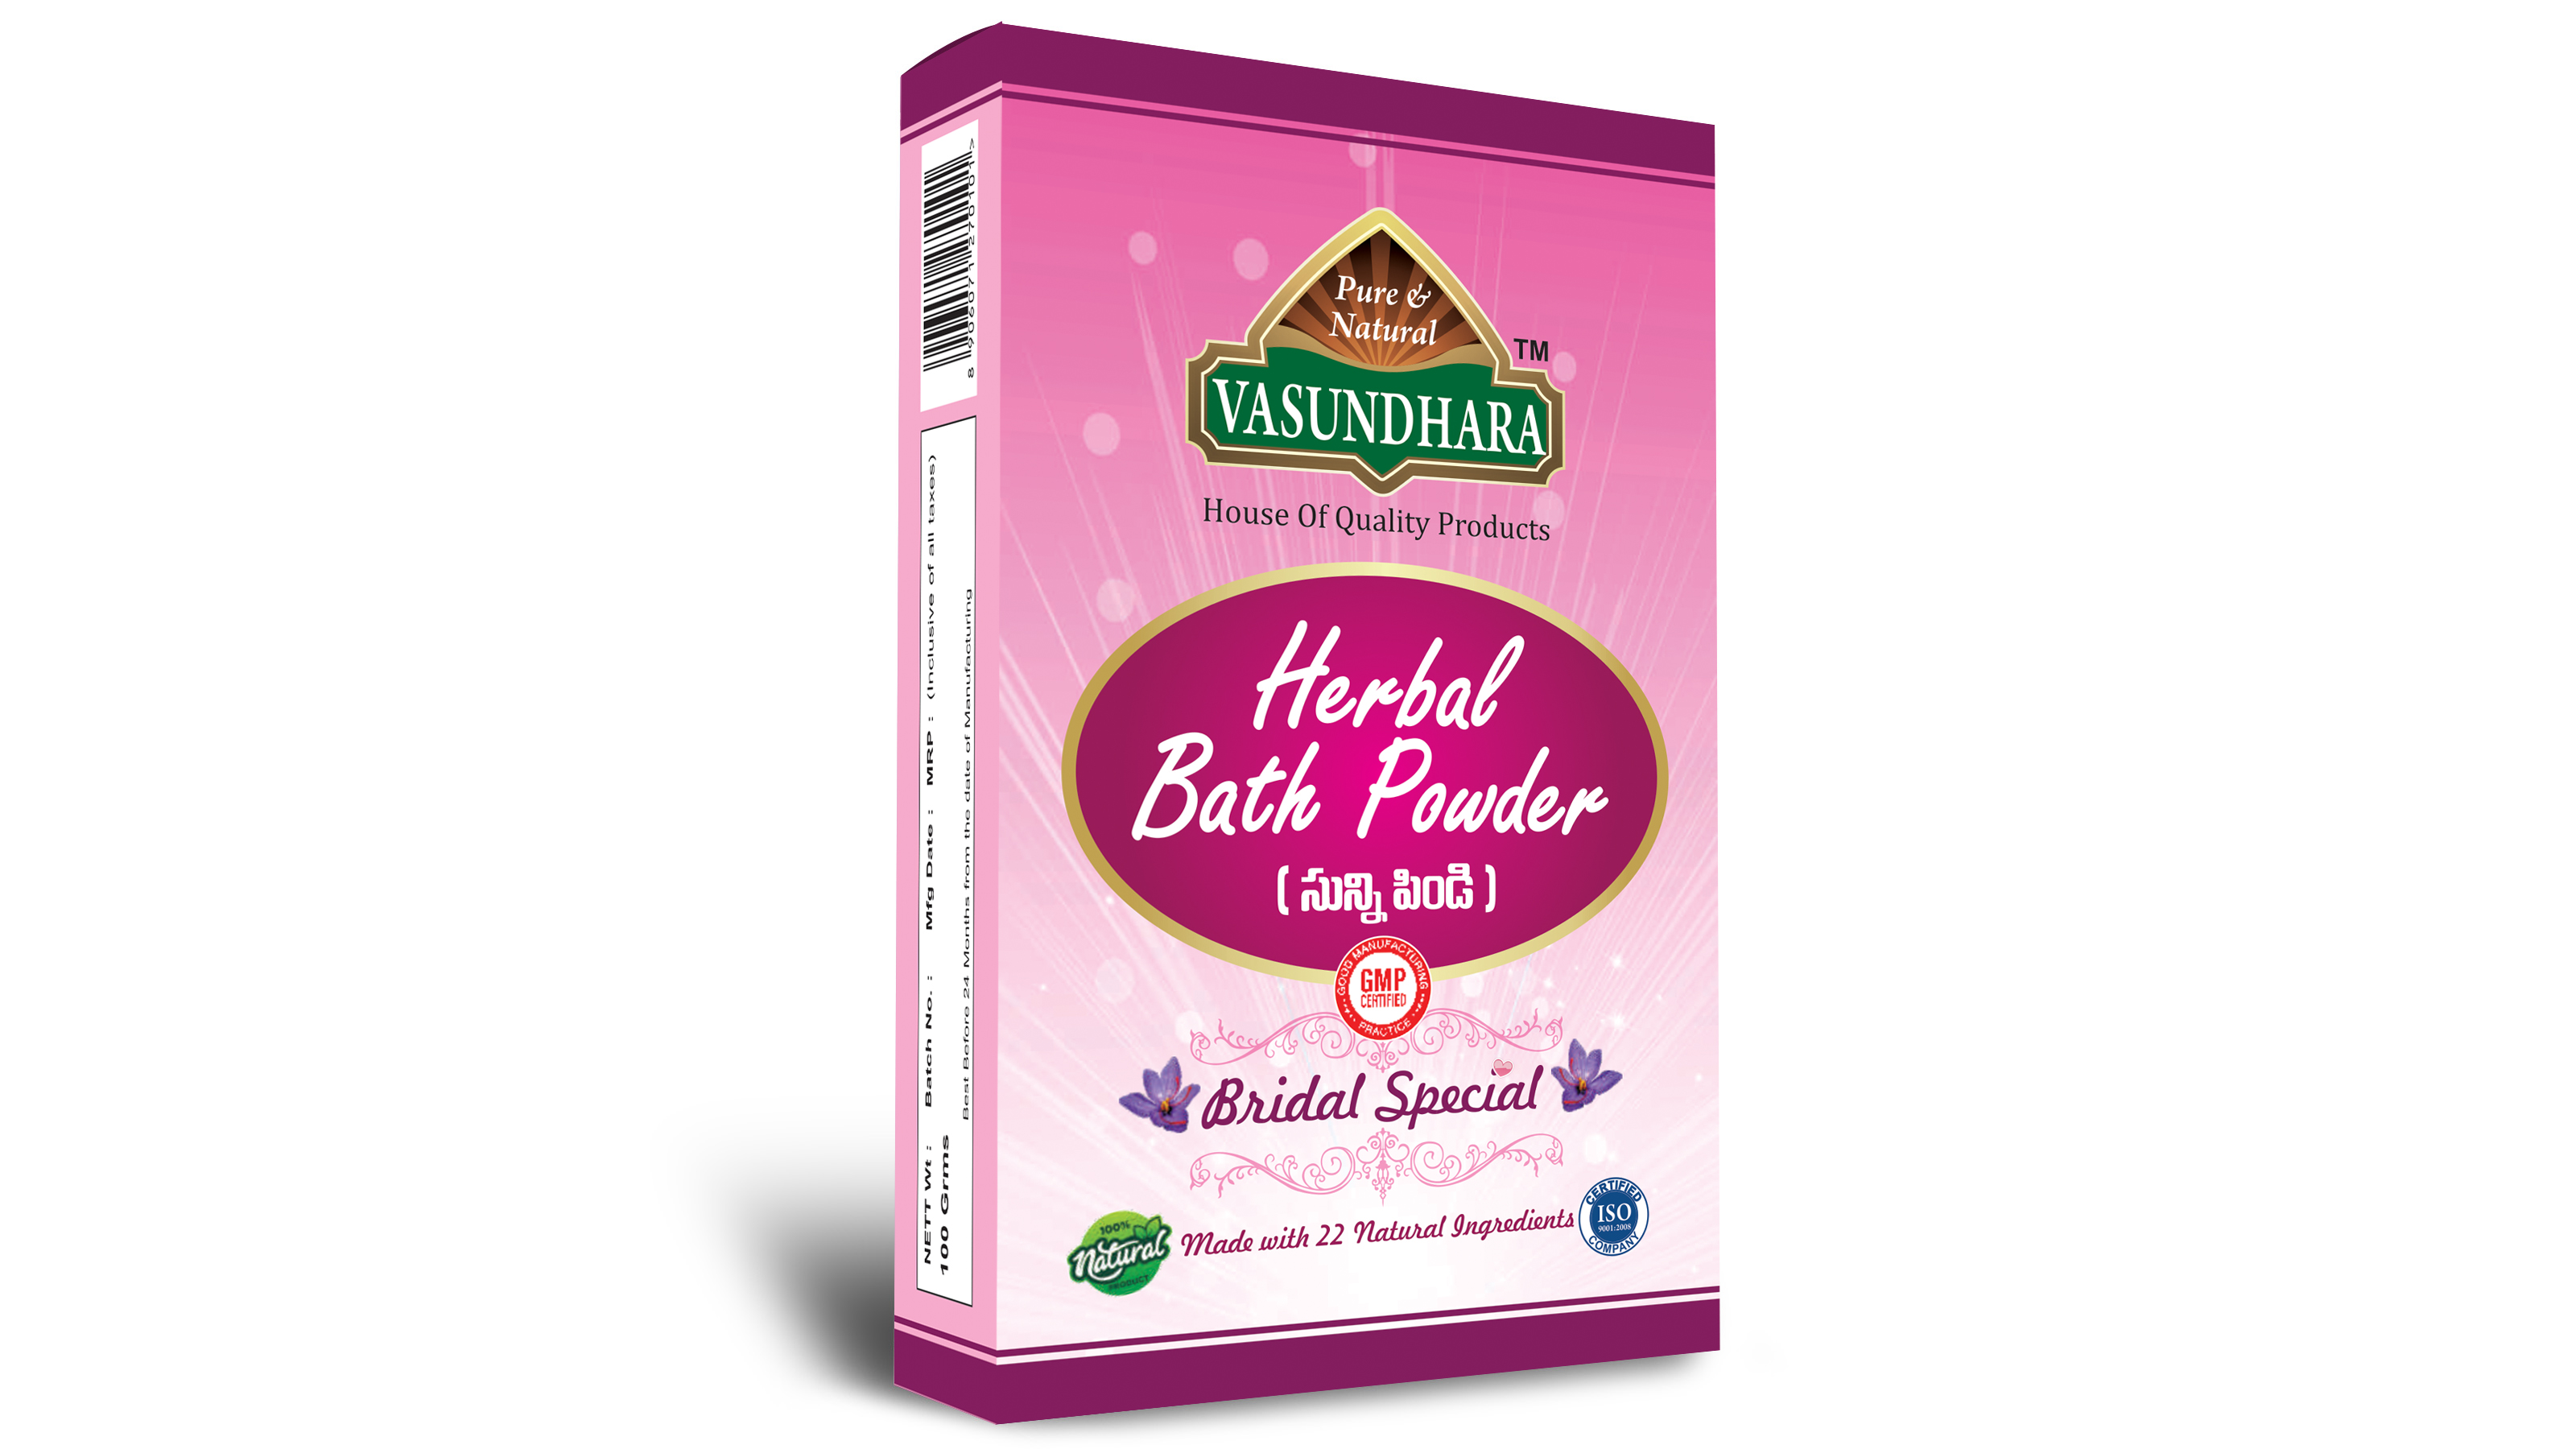 HERBAL BATH POWDER BRIDAL SPECIAL